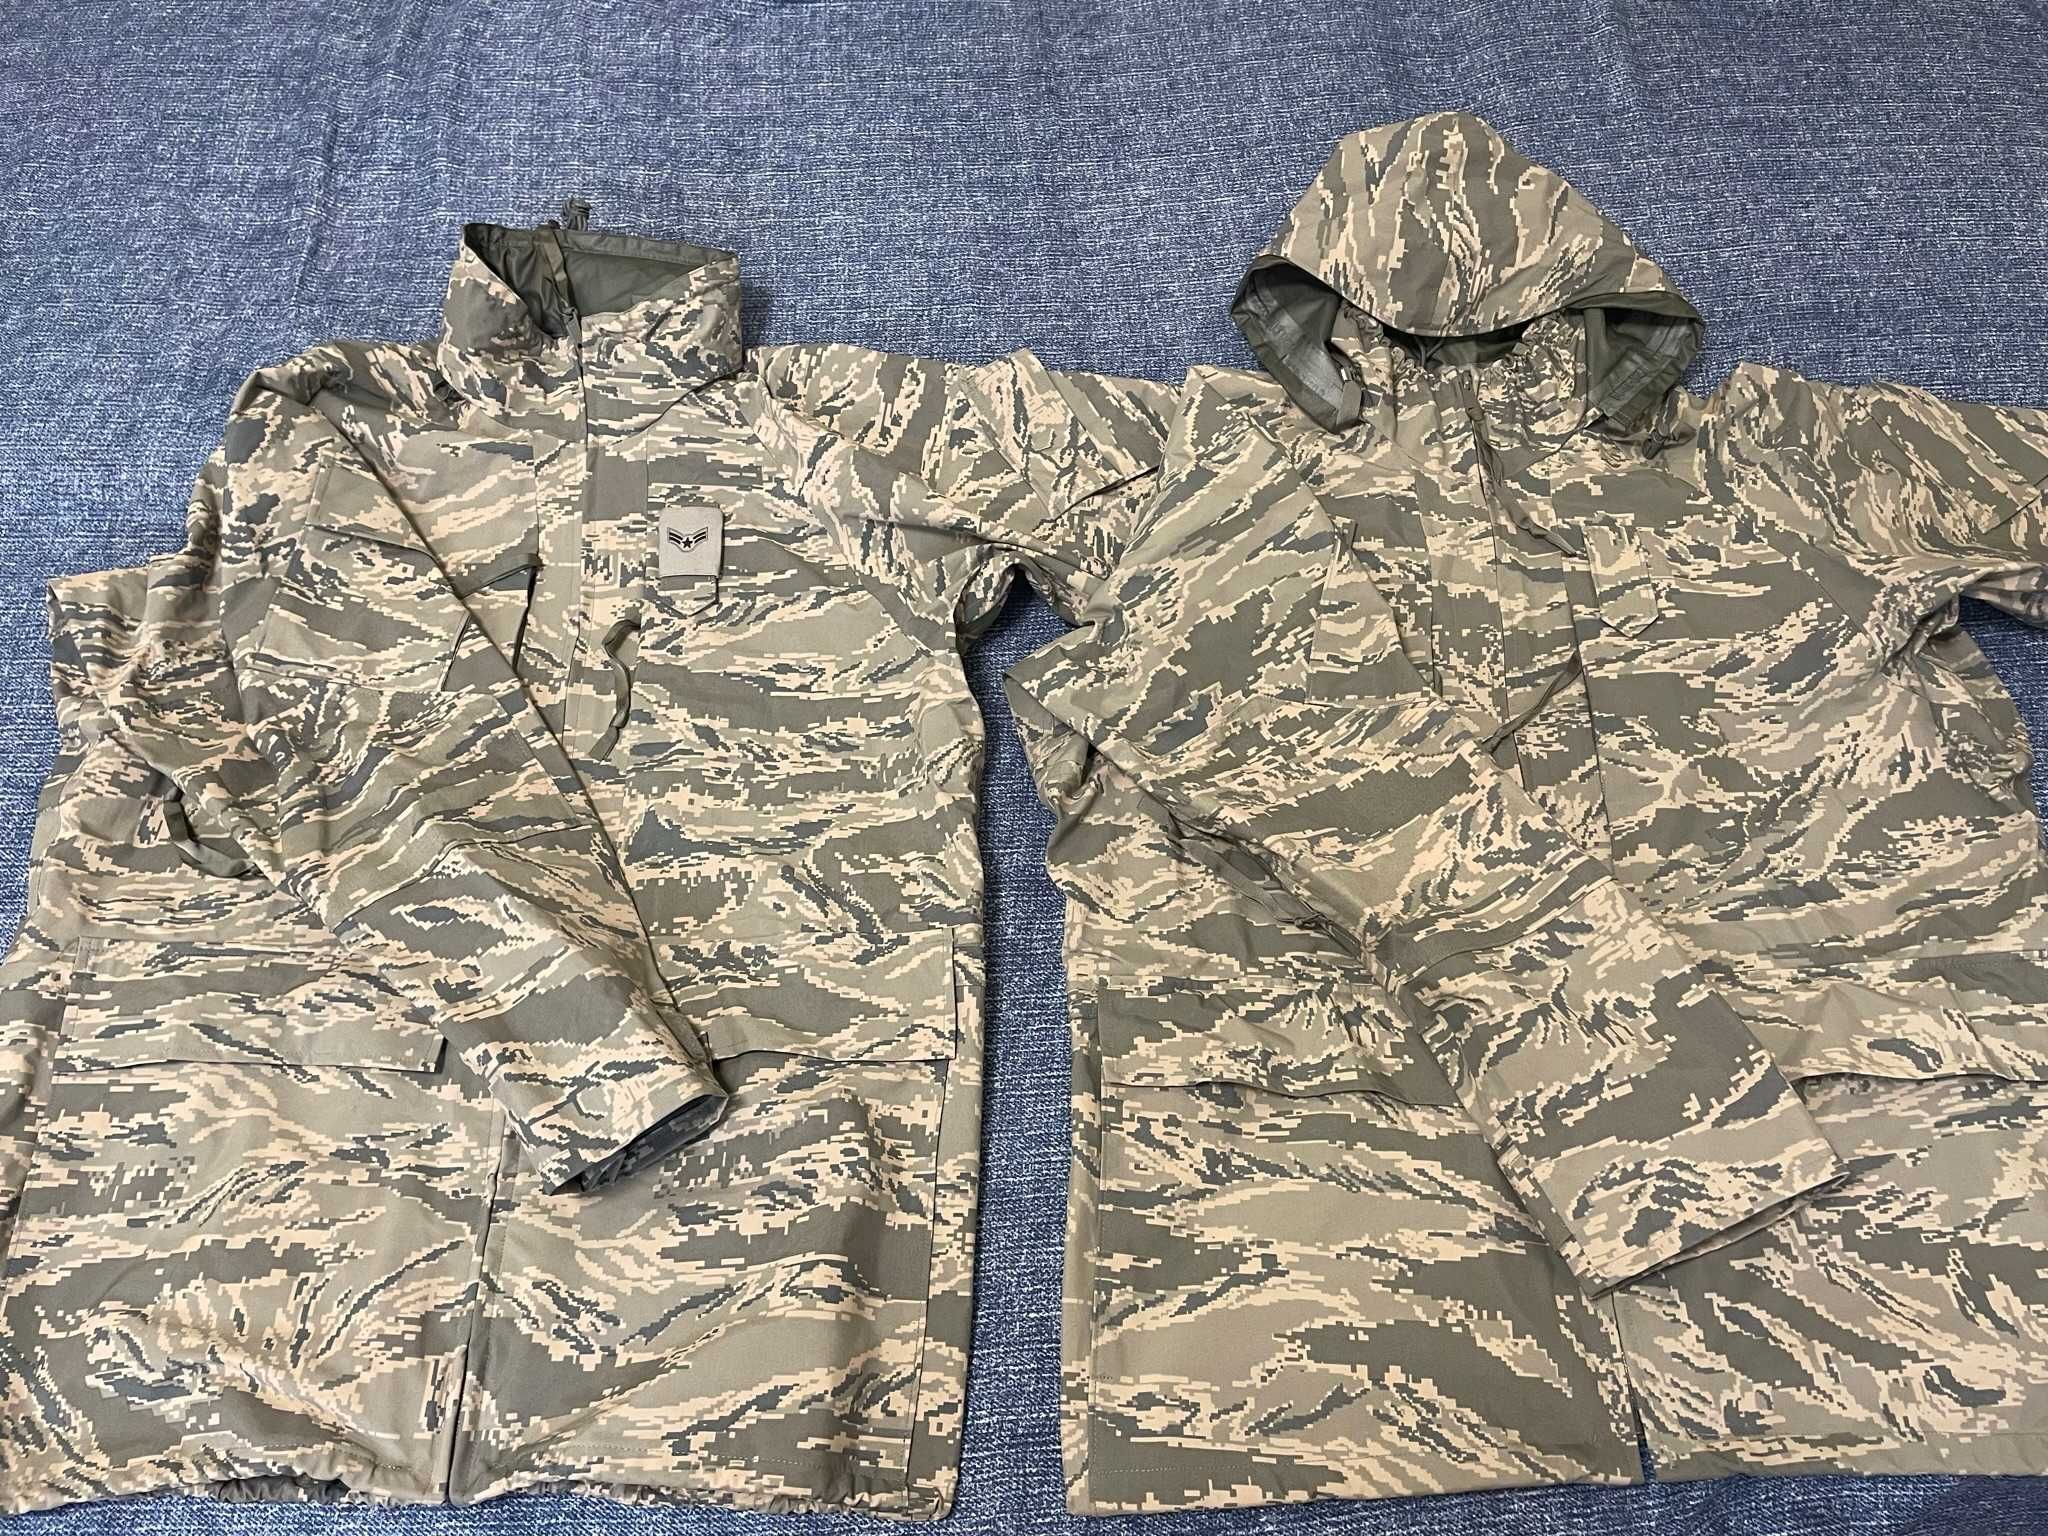 Военная курточка парка с Gore-Tex Made in USA размер S/R + L/R + L/S